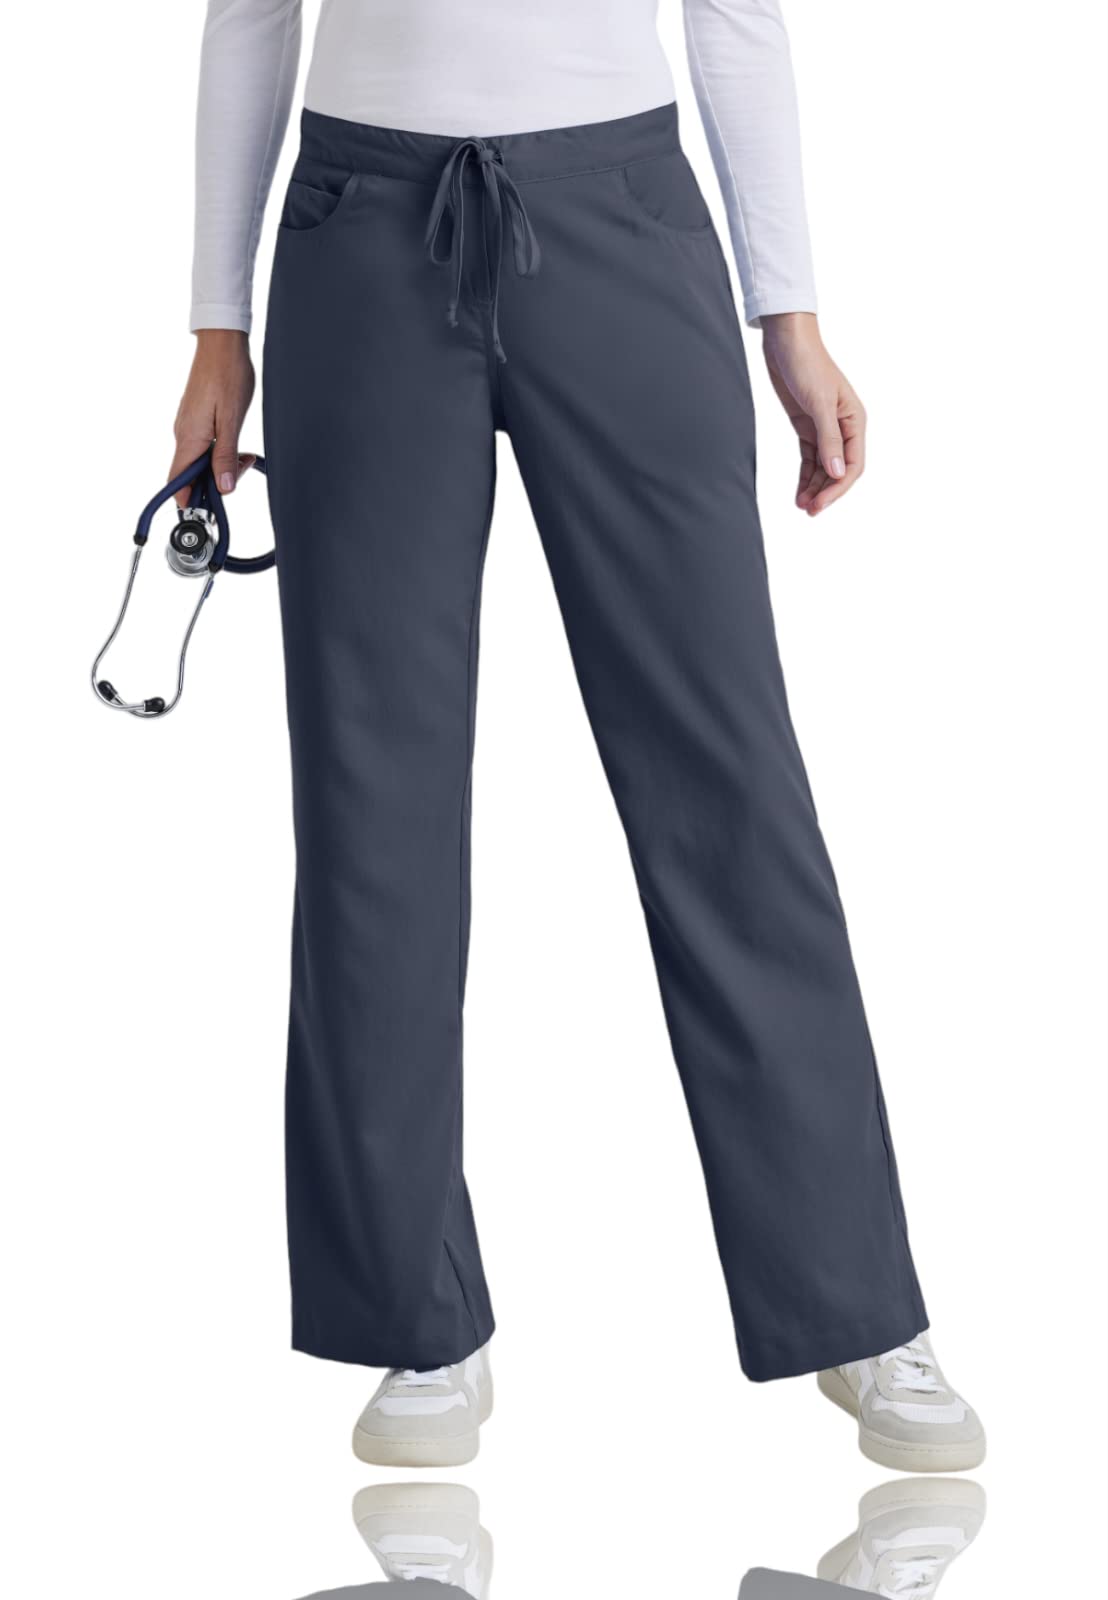 BARCO Grey's Anatomy Scrubs Riley OP-Hose für Damen, elastischer Taillenbund, mittelhohe Taille, ausgestelltes Bein, Damen-OP-Hose, Stahl, Large Hoch